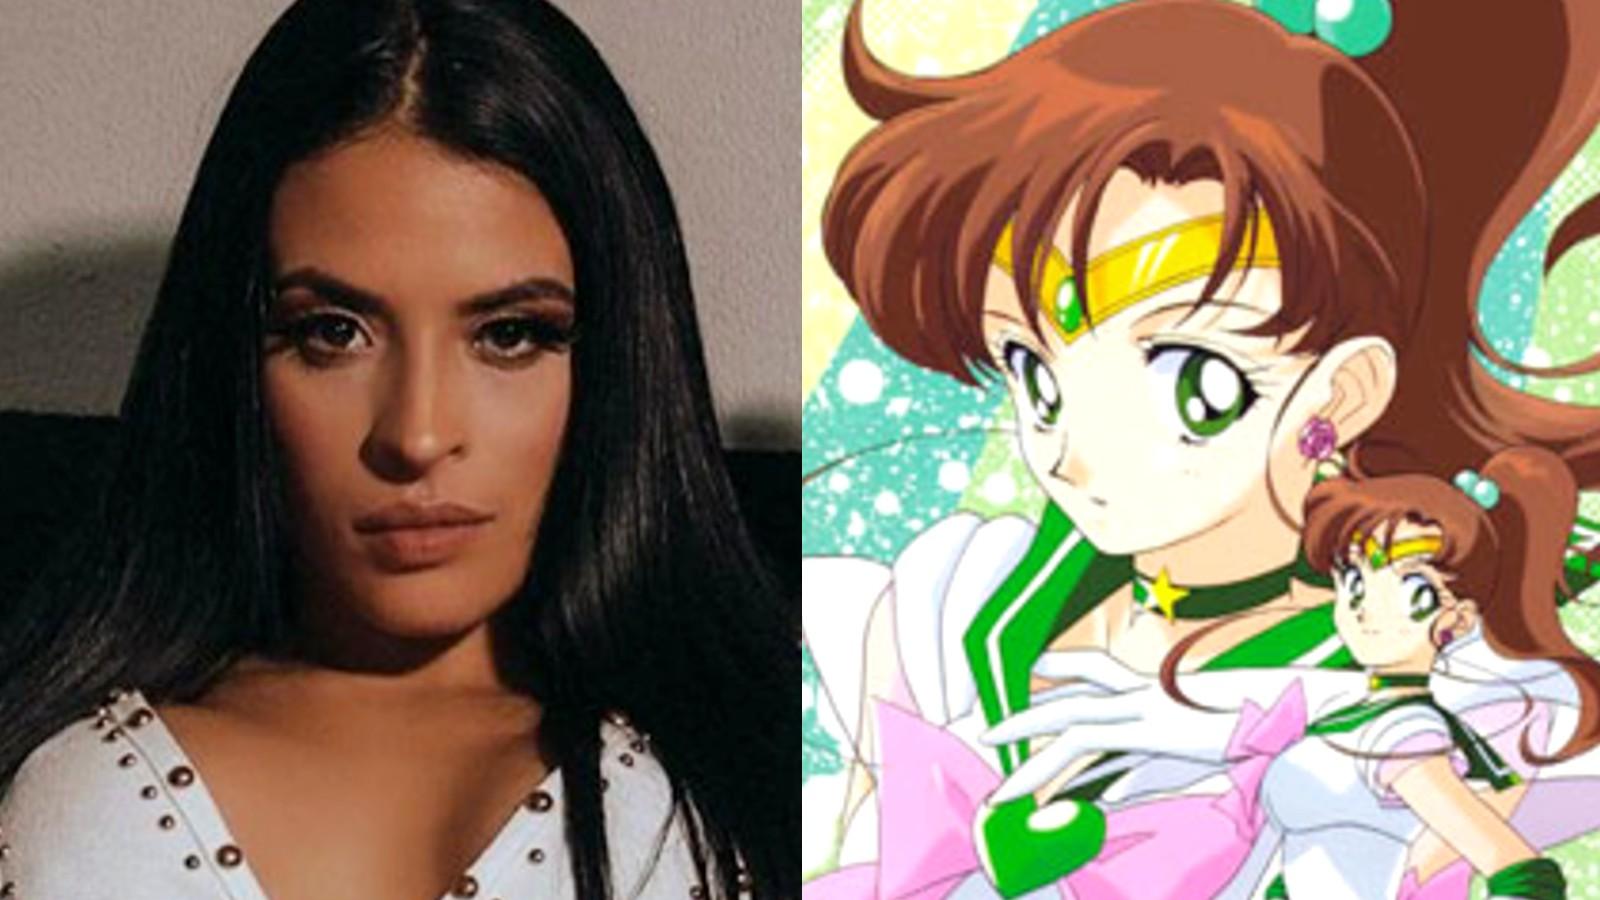 Zelina Vega next to Sailor Jupiter from Sailor Moon